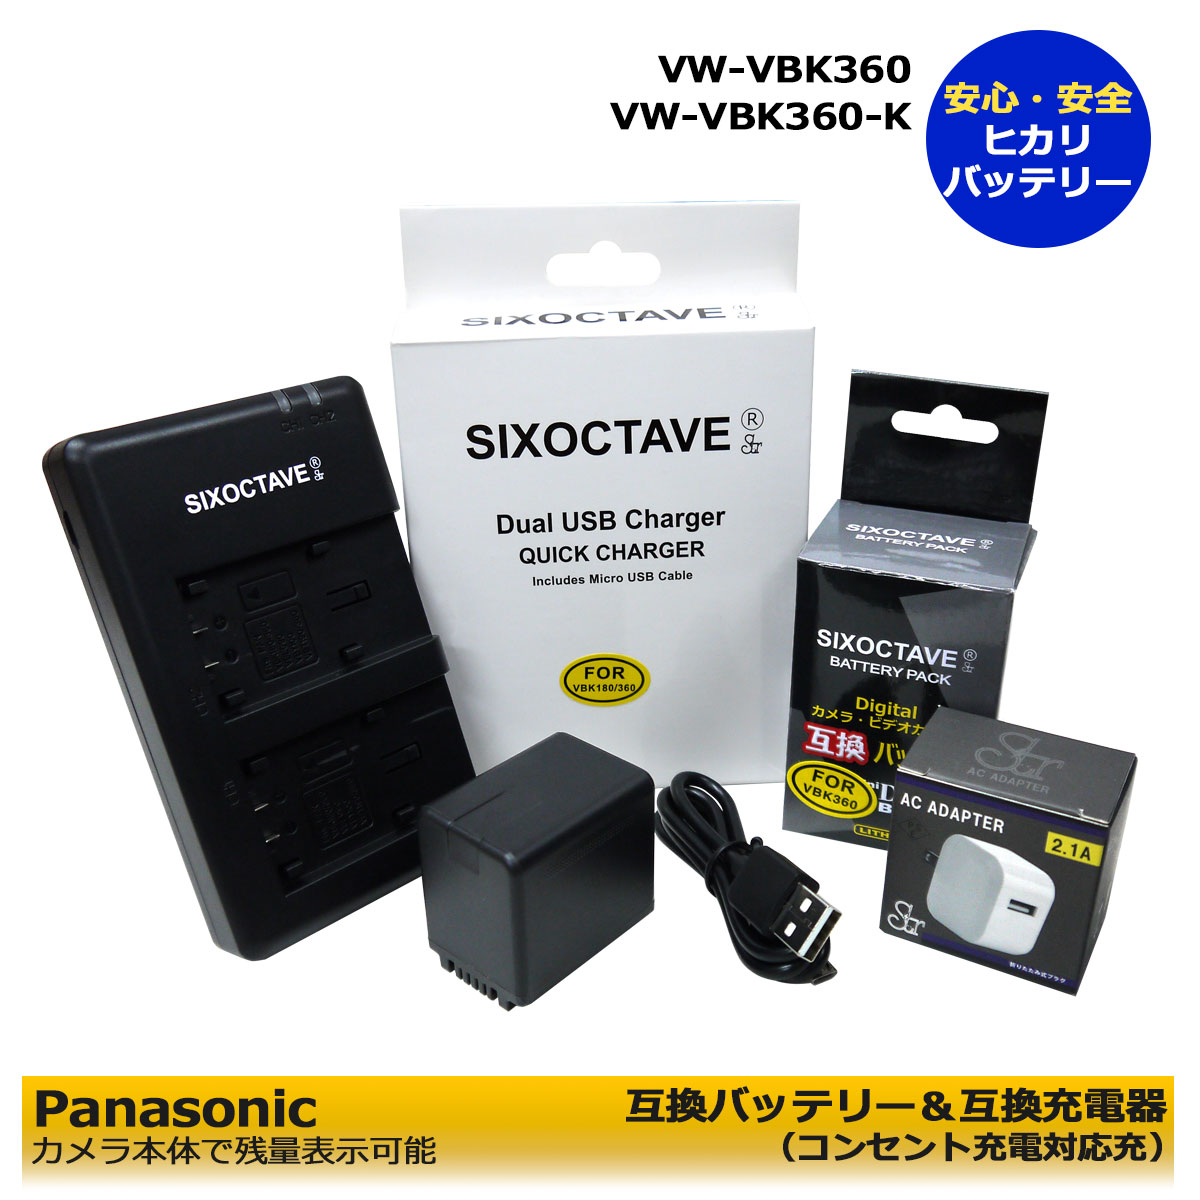 送料無料【あす楽対応】Panasonic 残量表示可能 VW-VBK360 / VW-VBK360-K 互換電池 1個（純正充電器で充電可能）と 互換充電器 デュアル1個とACアダプター1個 の3点セットHDC-TM85 / HDC-TM90 / HDC-TM95 / HC-V100M / HC-V300M / HC-V600M / HC-V700M (A2.1)